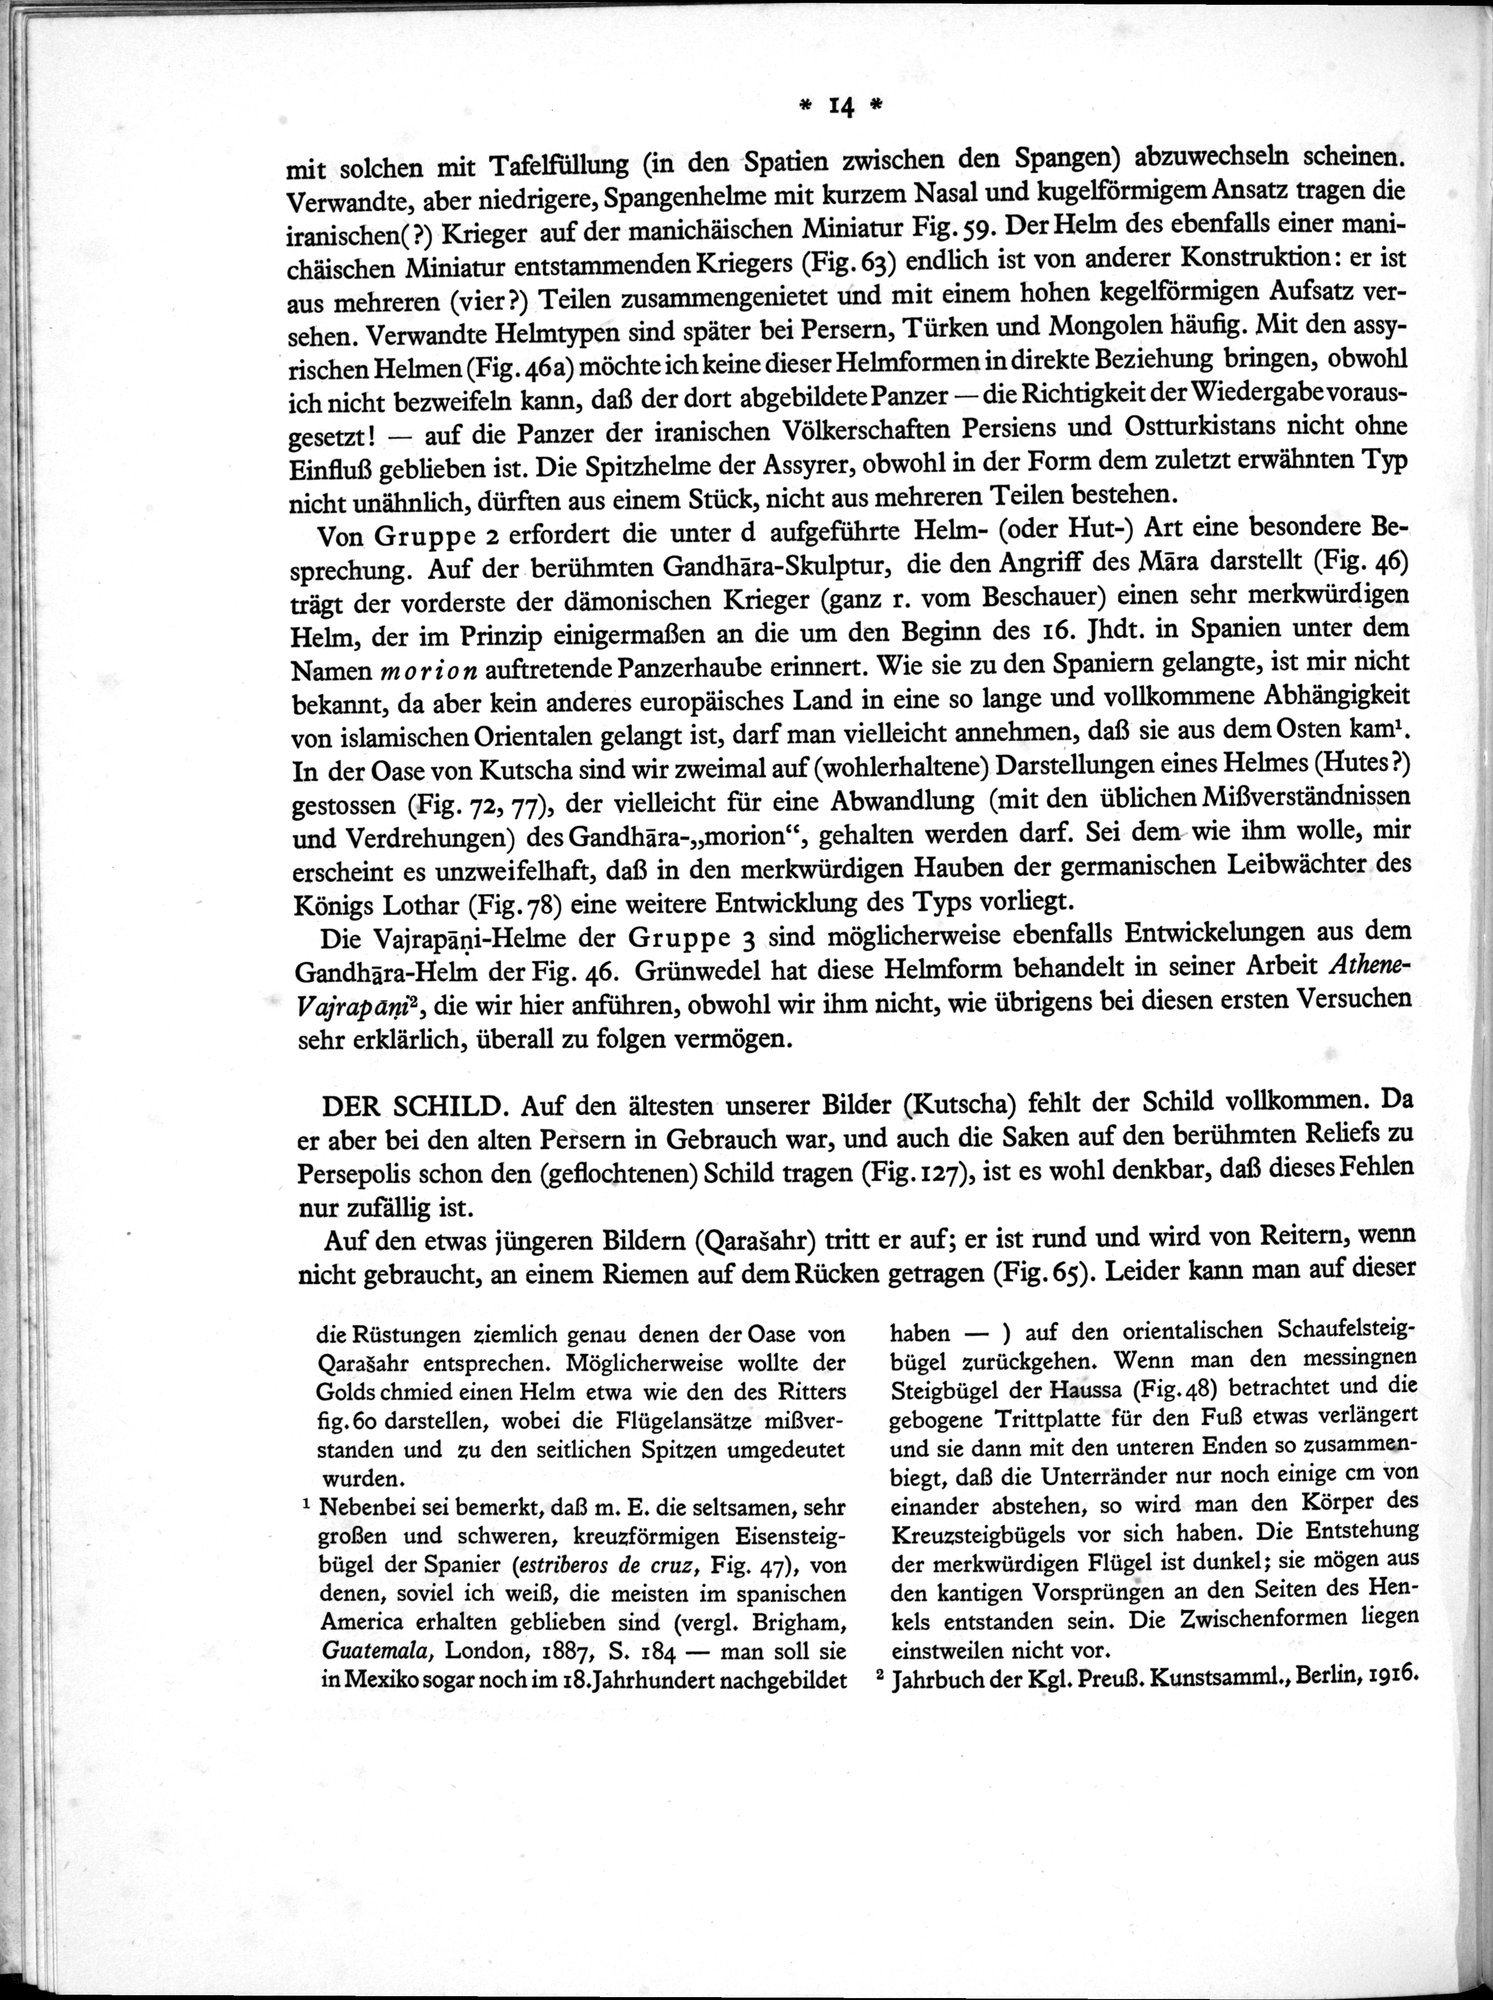 Bilderatlas zur Kunst und Kulturgeschichte Mittel-Asiens : vol.1 / Page 18 (Grayscale High Resolution Image)